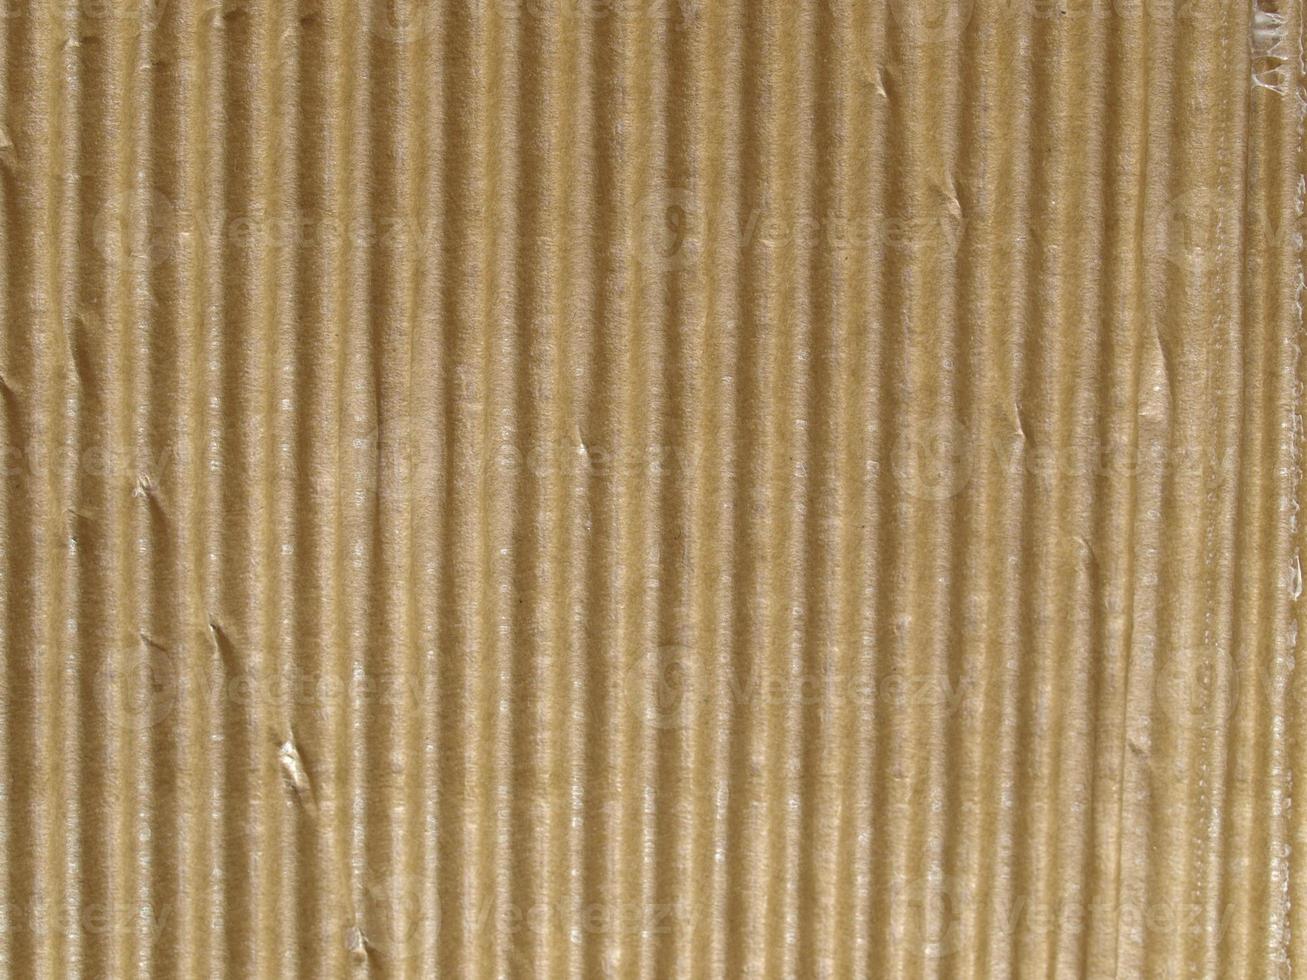 fundo de textura de papelão ondulado marrom grunge foto